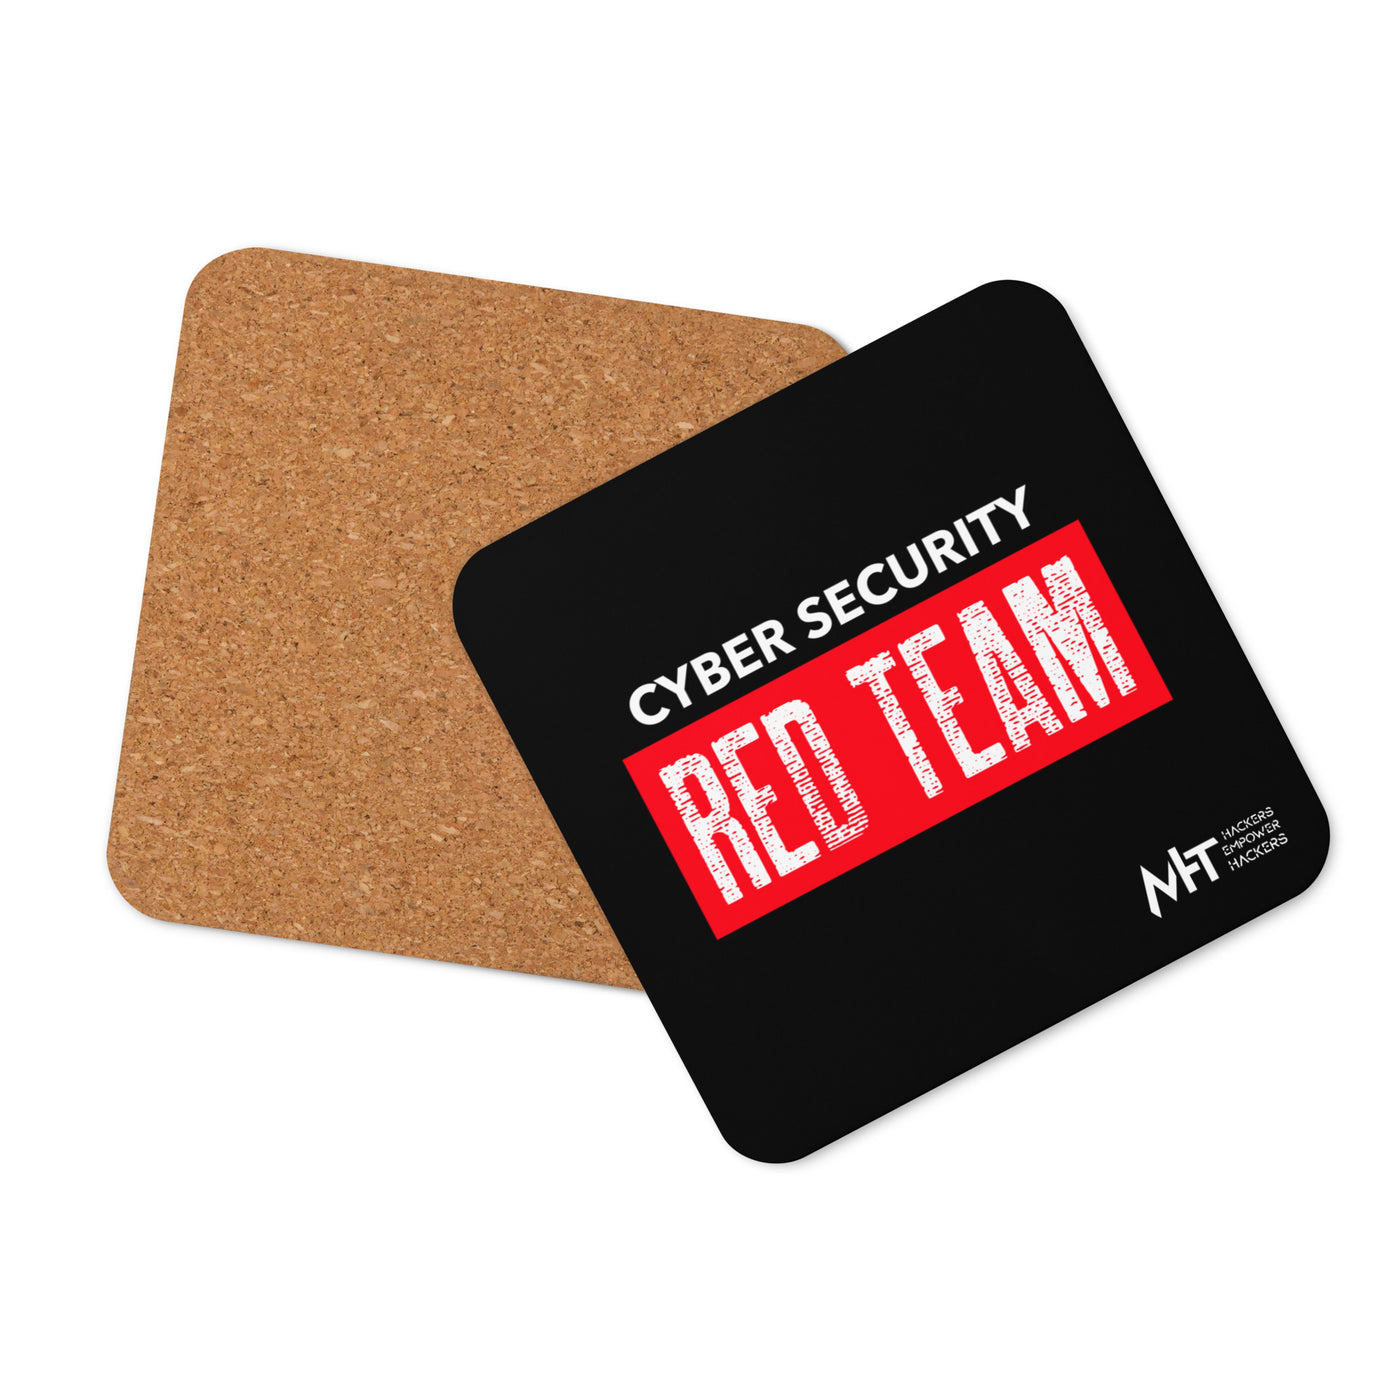 Cyber Security Red Team V1 - Cork-back coaster